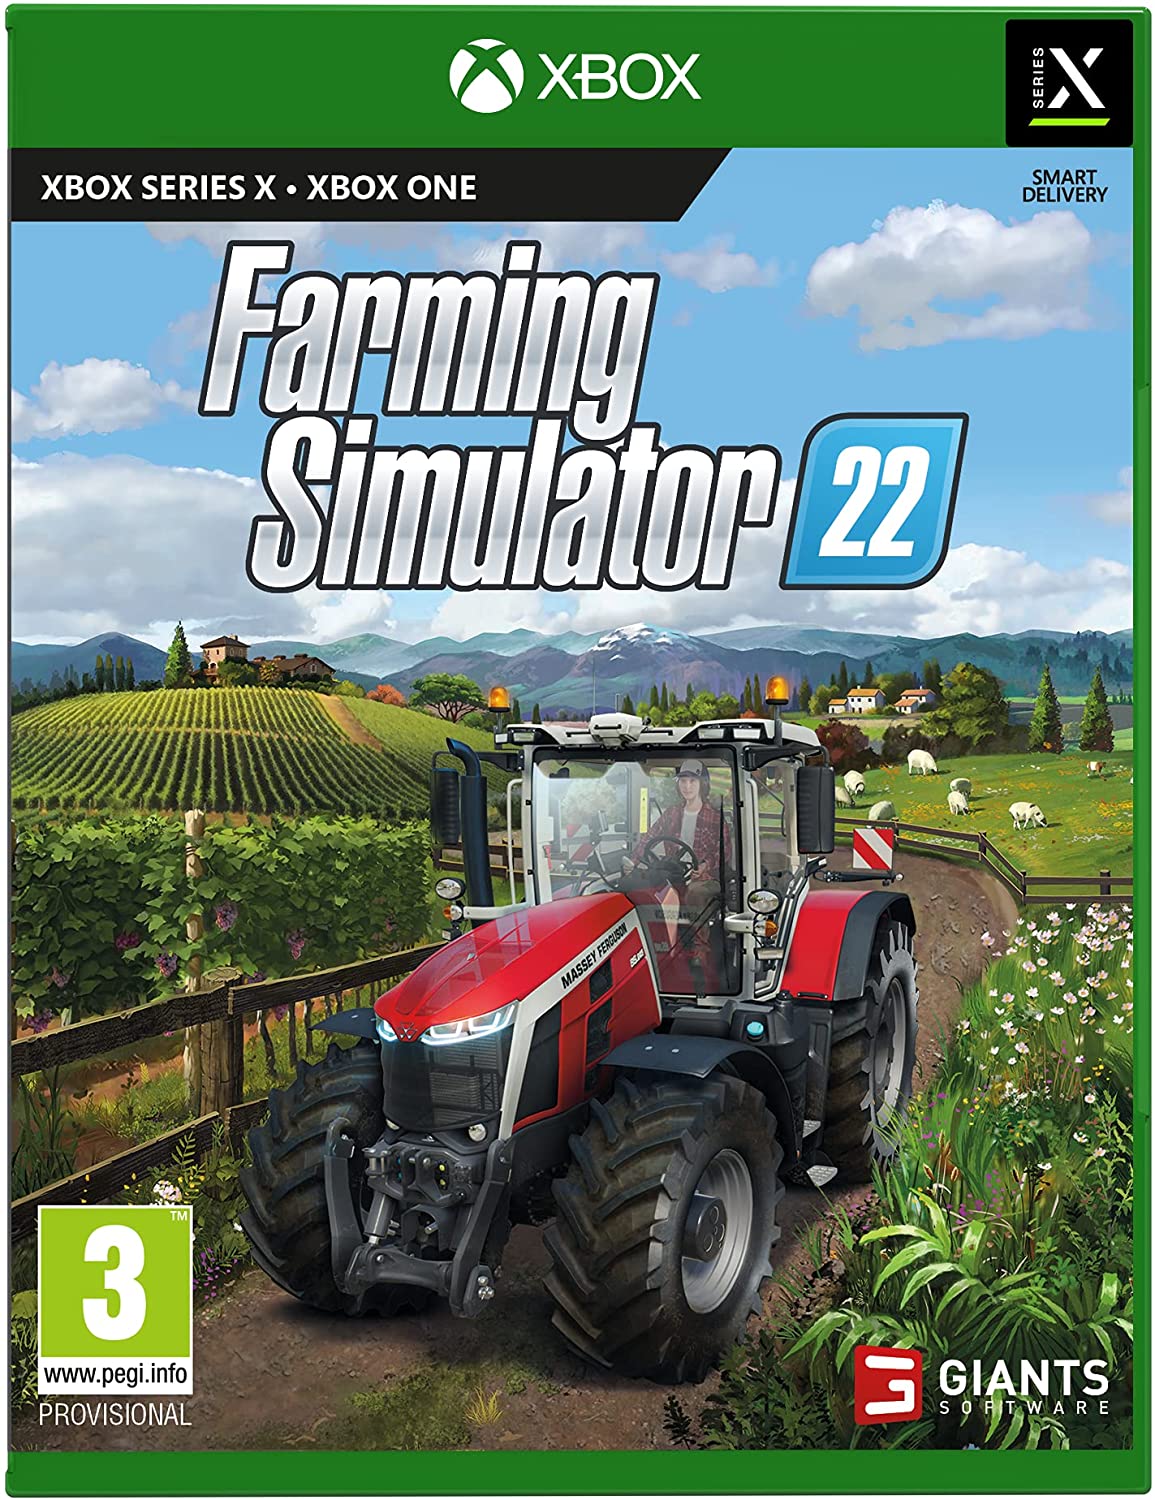 buy-farming-simulator-22-digital-download-key-xbox-united-kingdom-with-bitcoin-ethereum